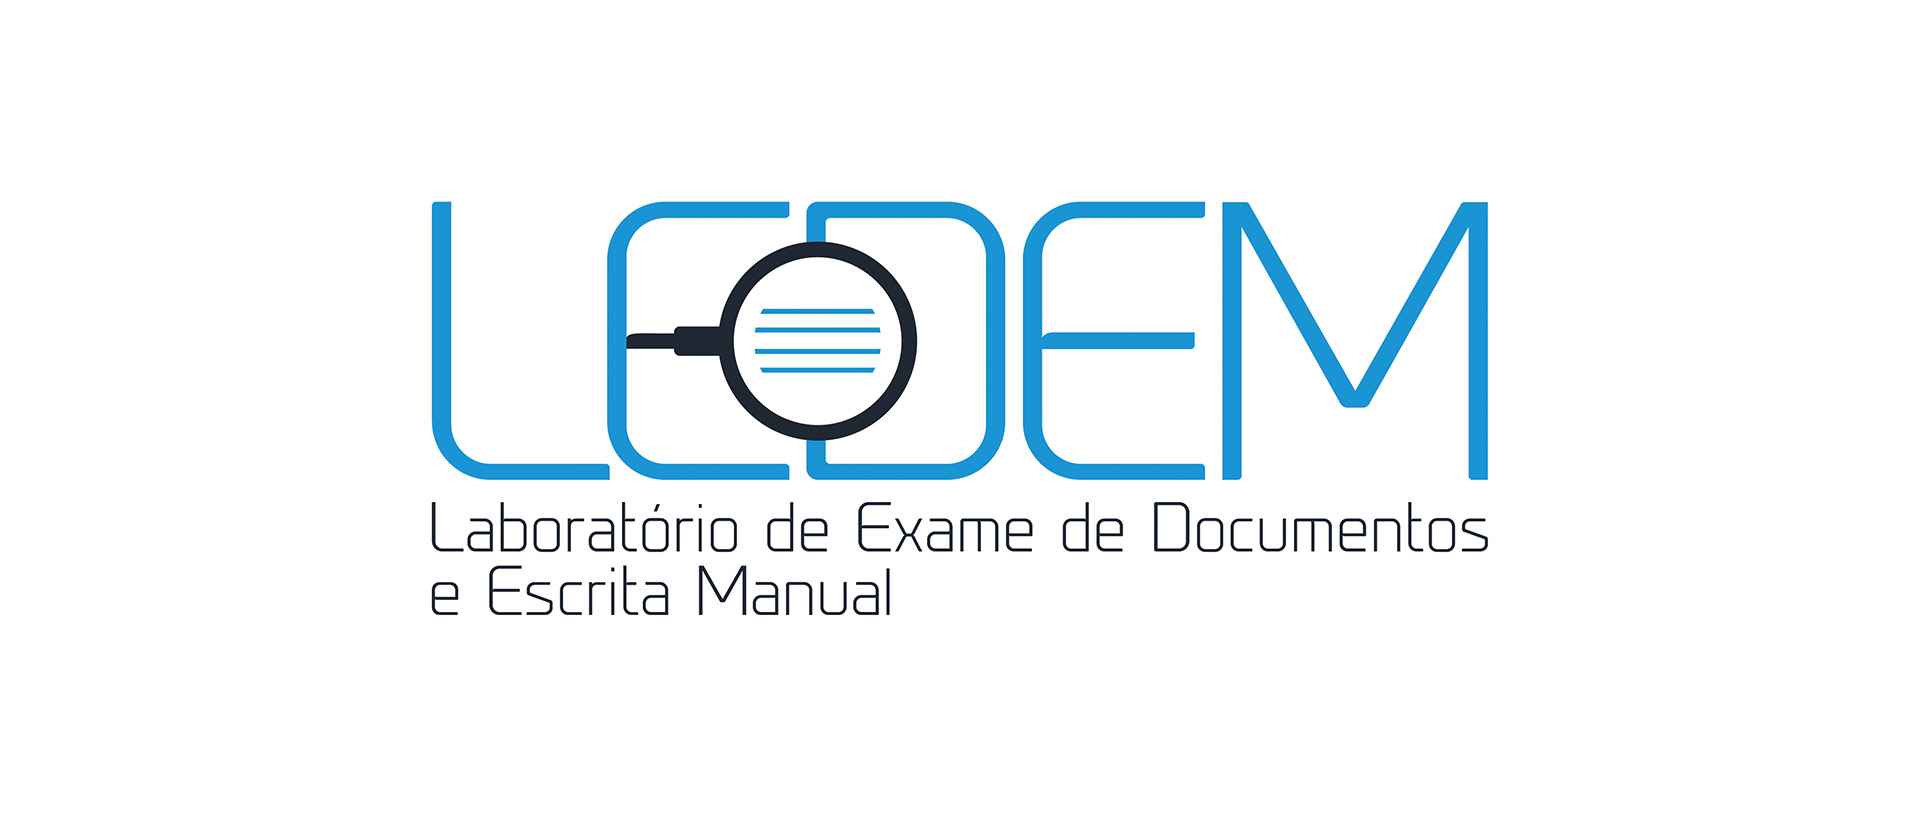 Logótipo do LEDEM - Laboratório de Exame de Documentos e Escrita Manual